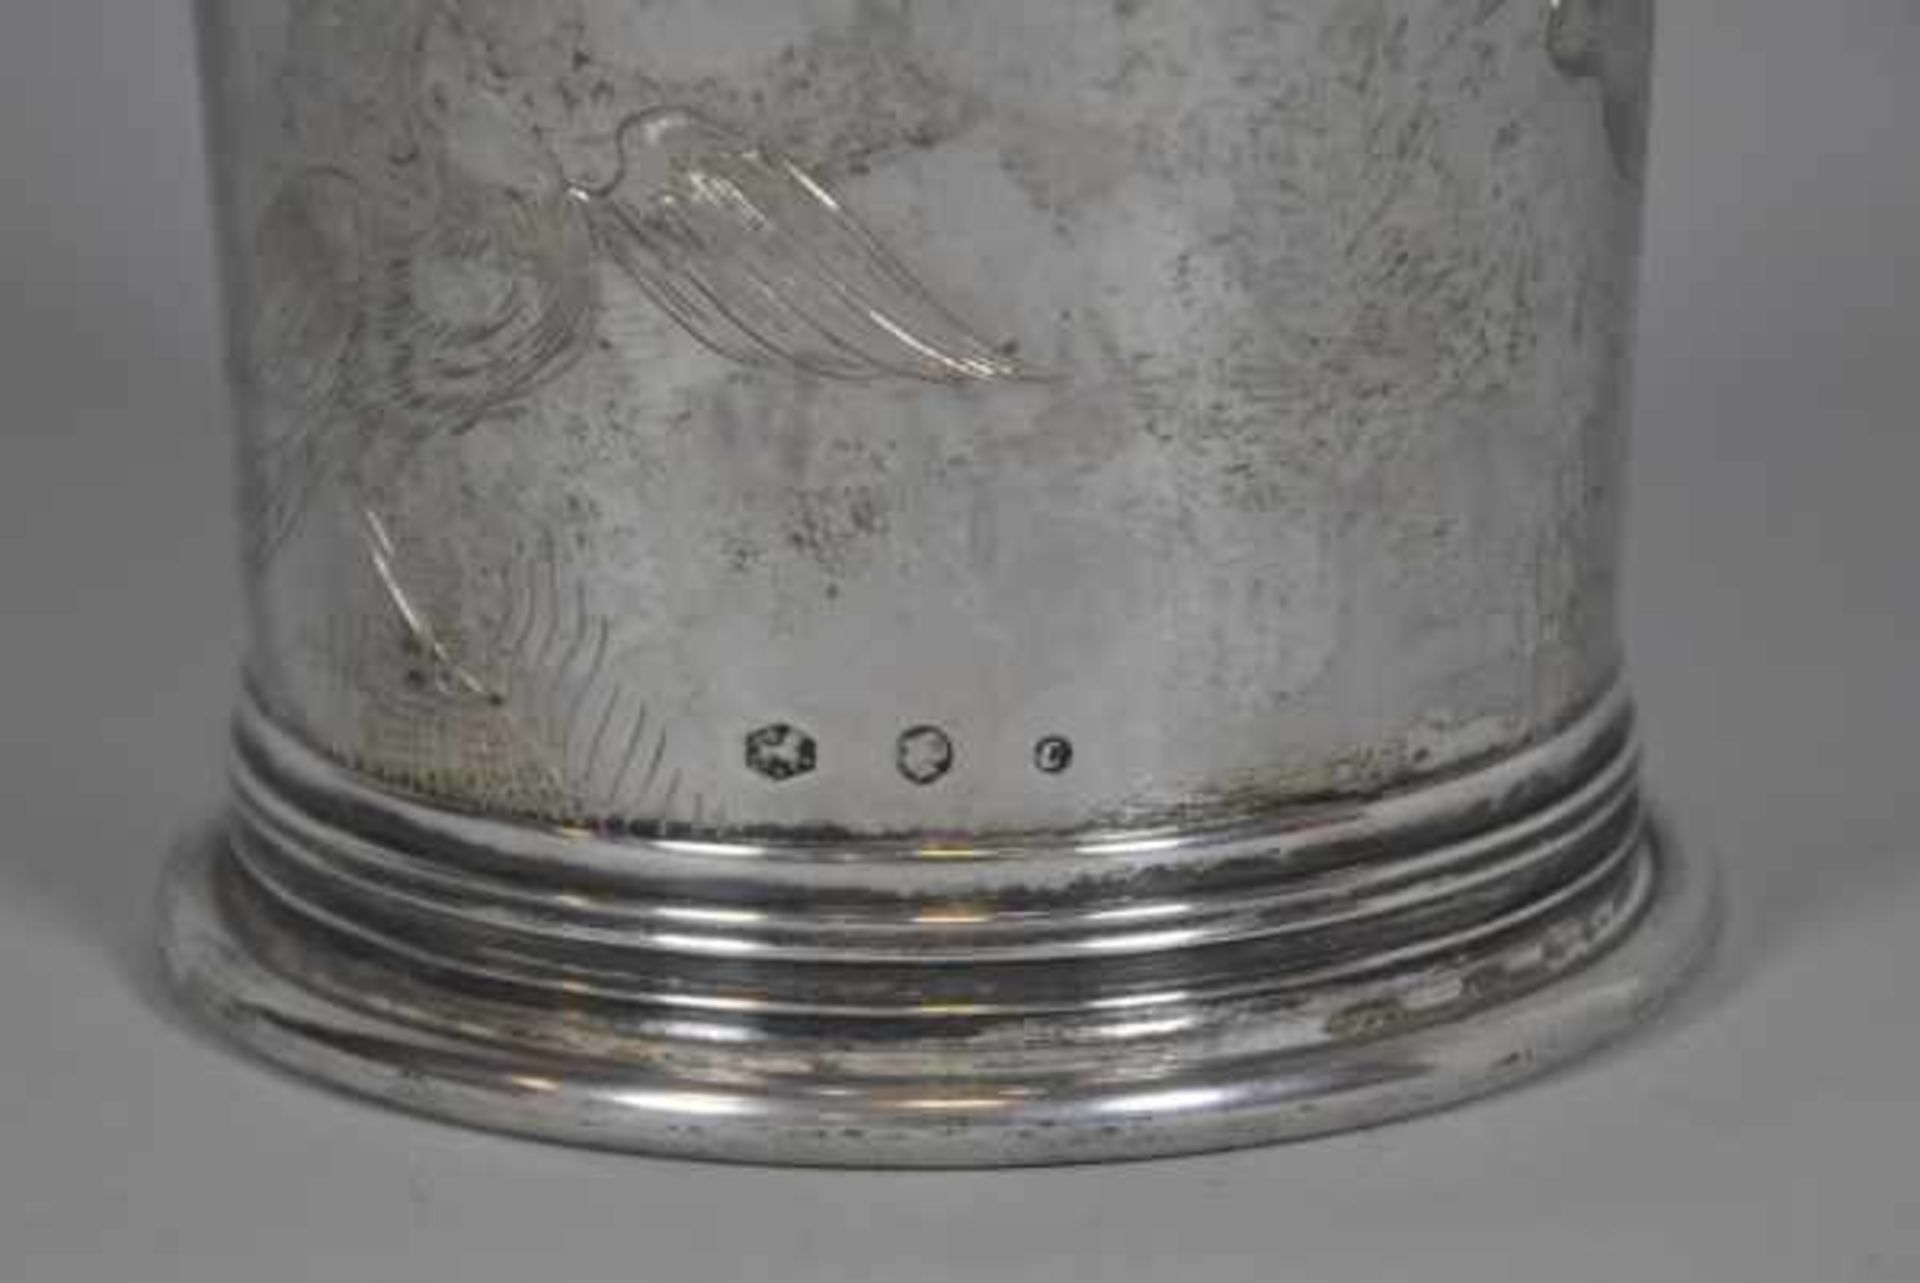 VASE becherförmig, nach oben hin ausgestellt, fein ziseliertes florales Dekor, Silber 833, 434gr, - Bild 3 aus 4